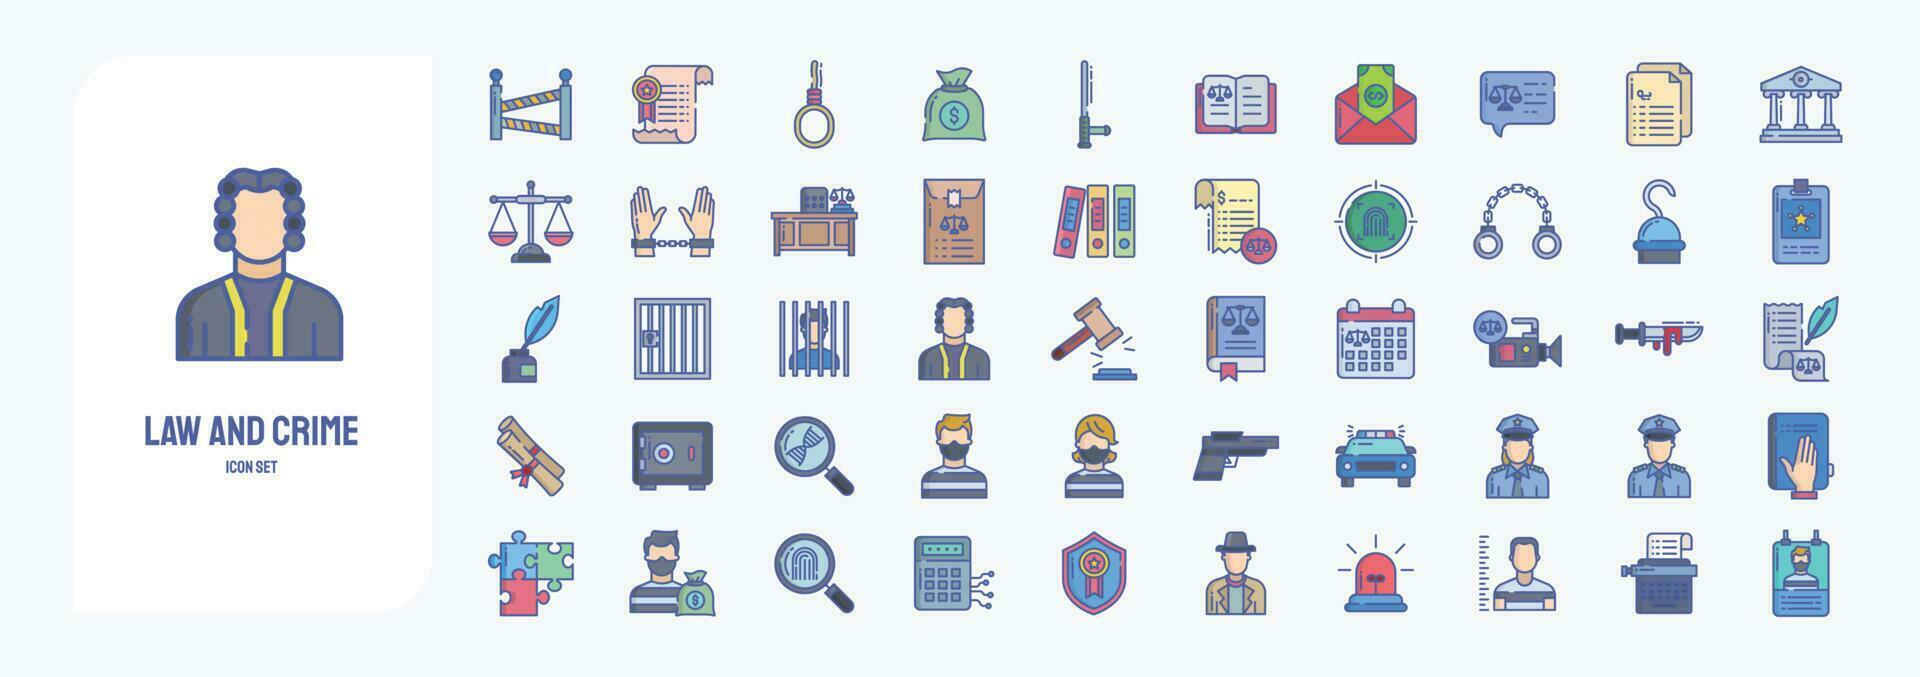 lag och brottslighet, Inklusive ikoner tycka om polis, vårdnad, domstol, handklovar och Mer vektor